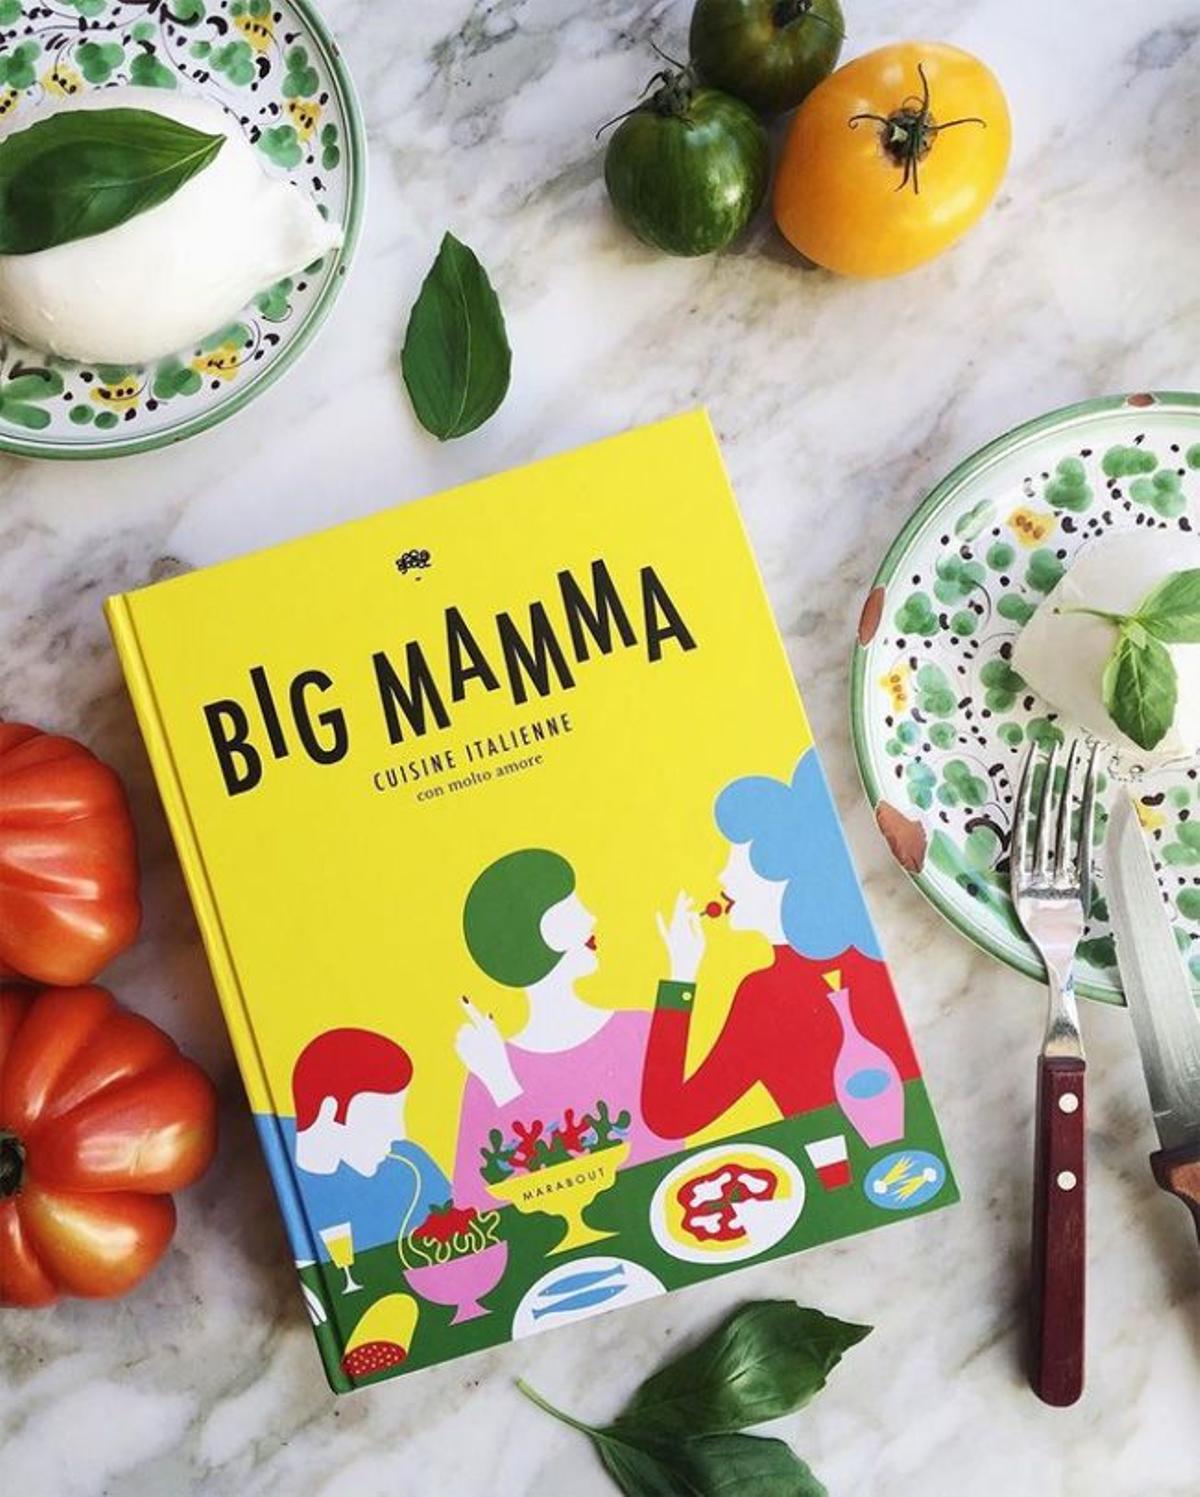 '¡OH MAMMA!', libro de recetas del Grupo Big Mamma